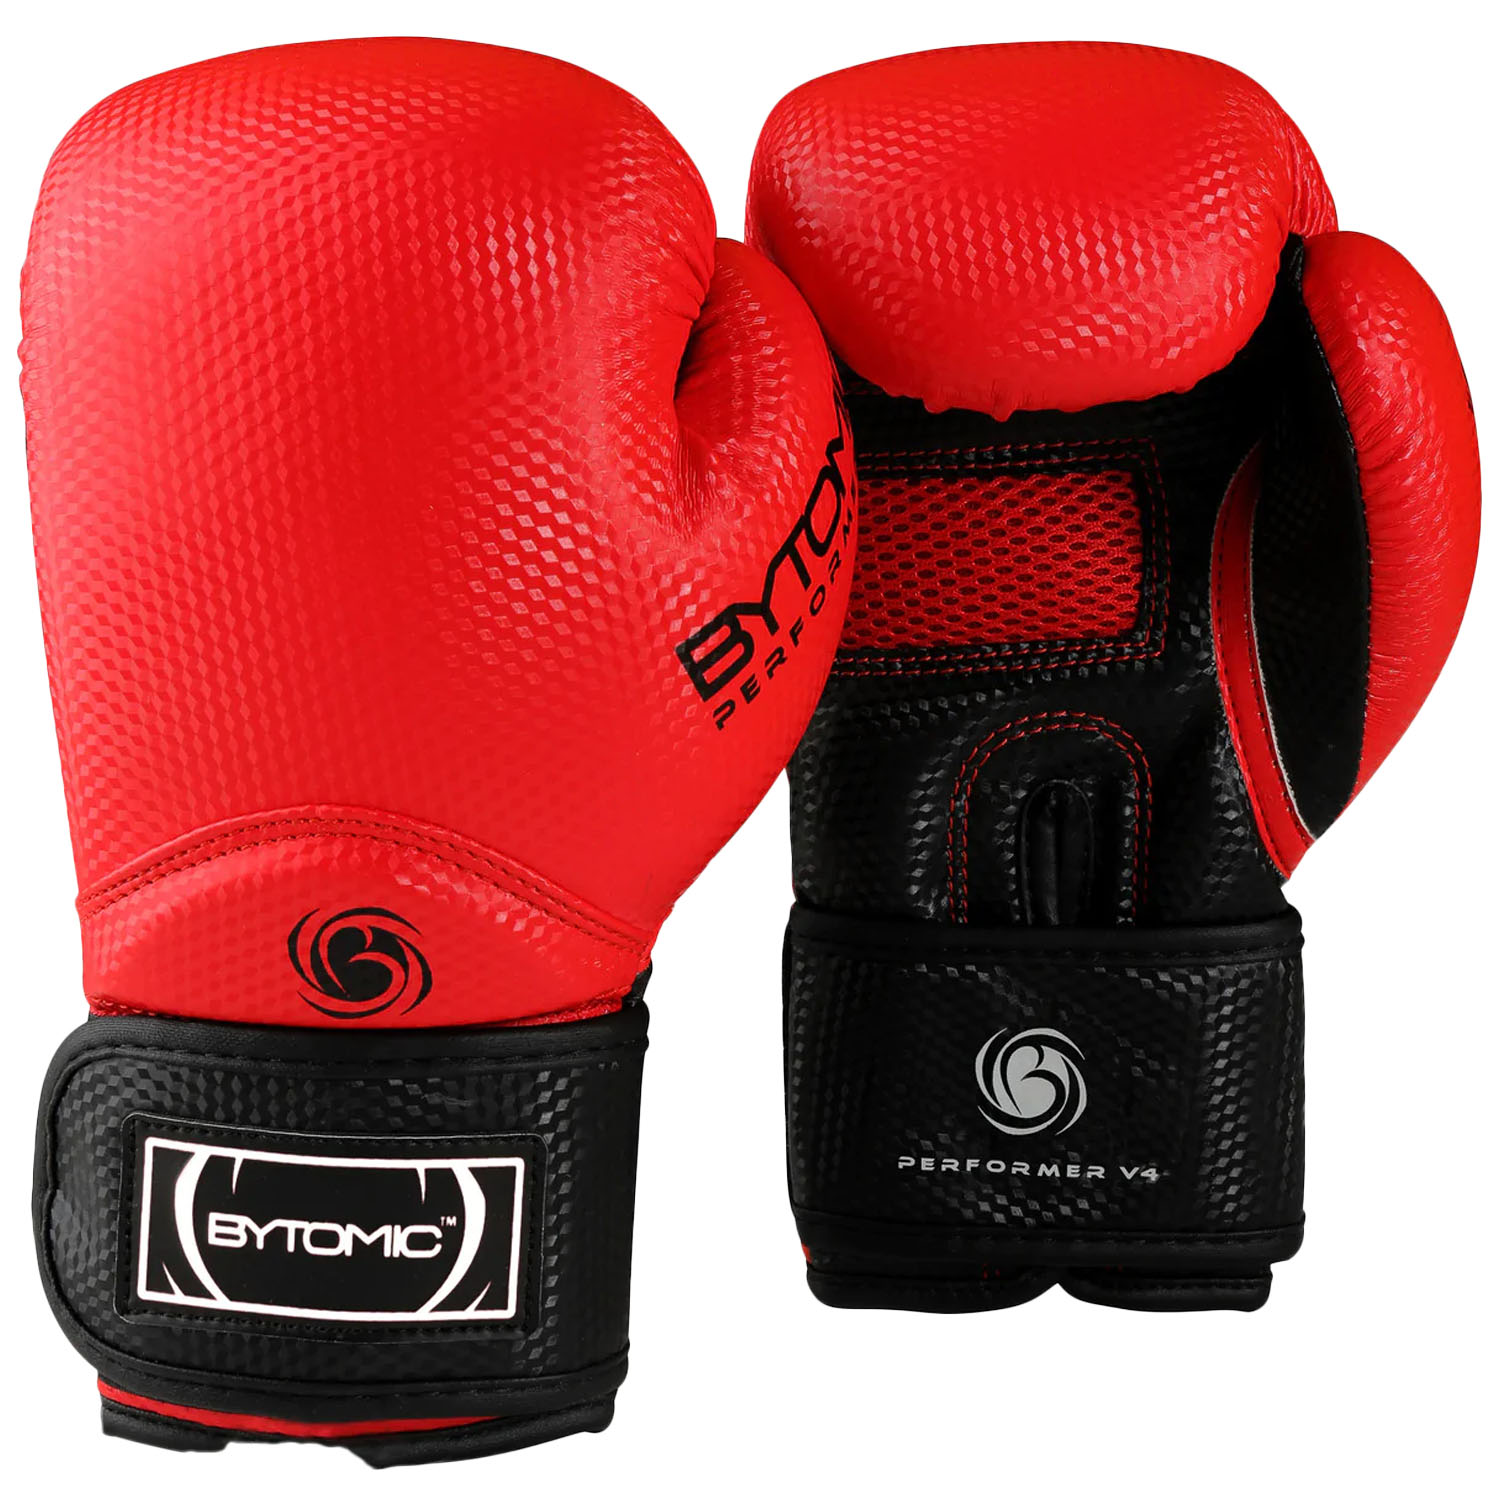 Bytomic Boxing Gloves, Performer, V4, rot